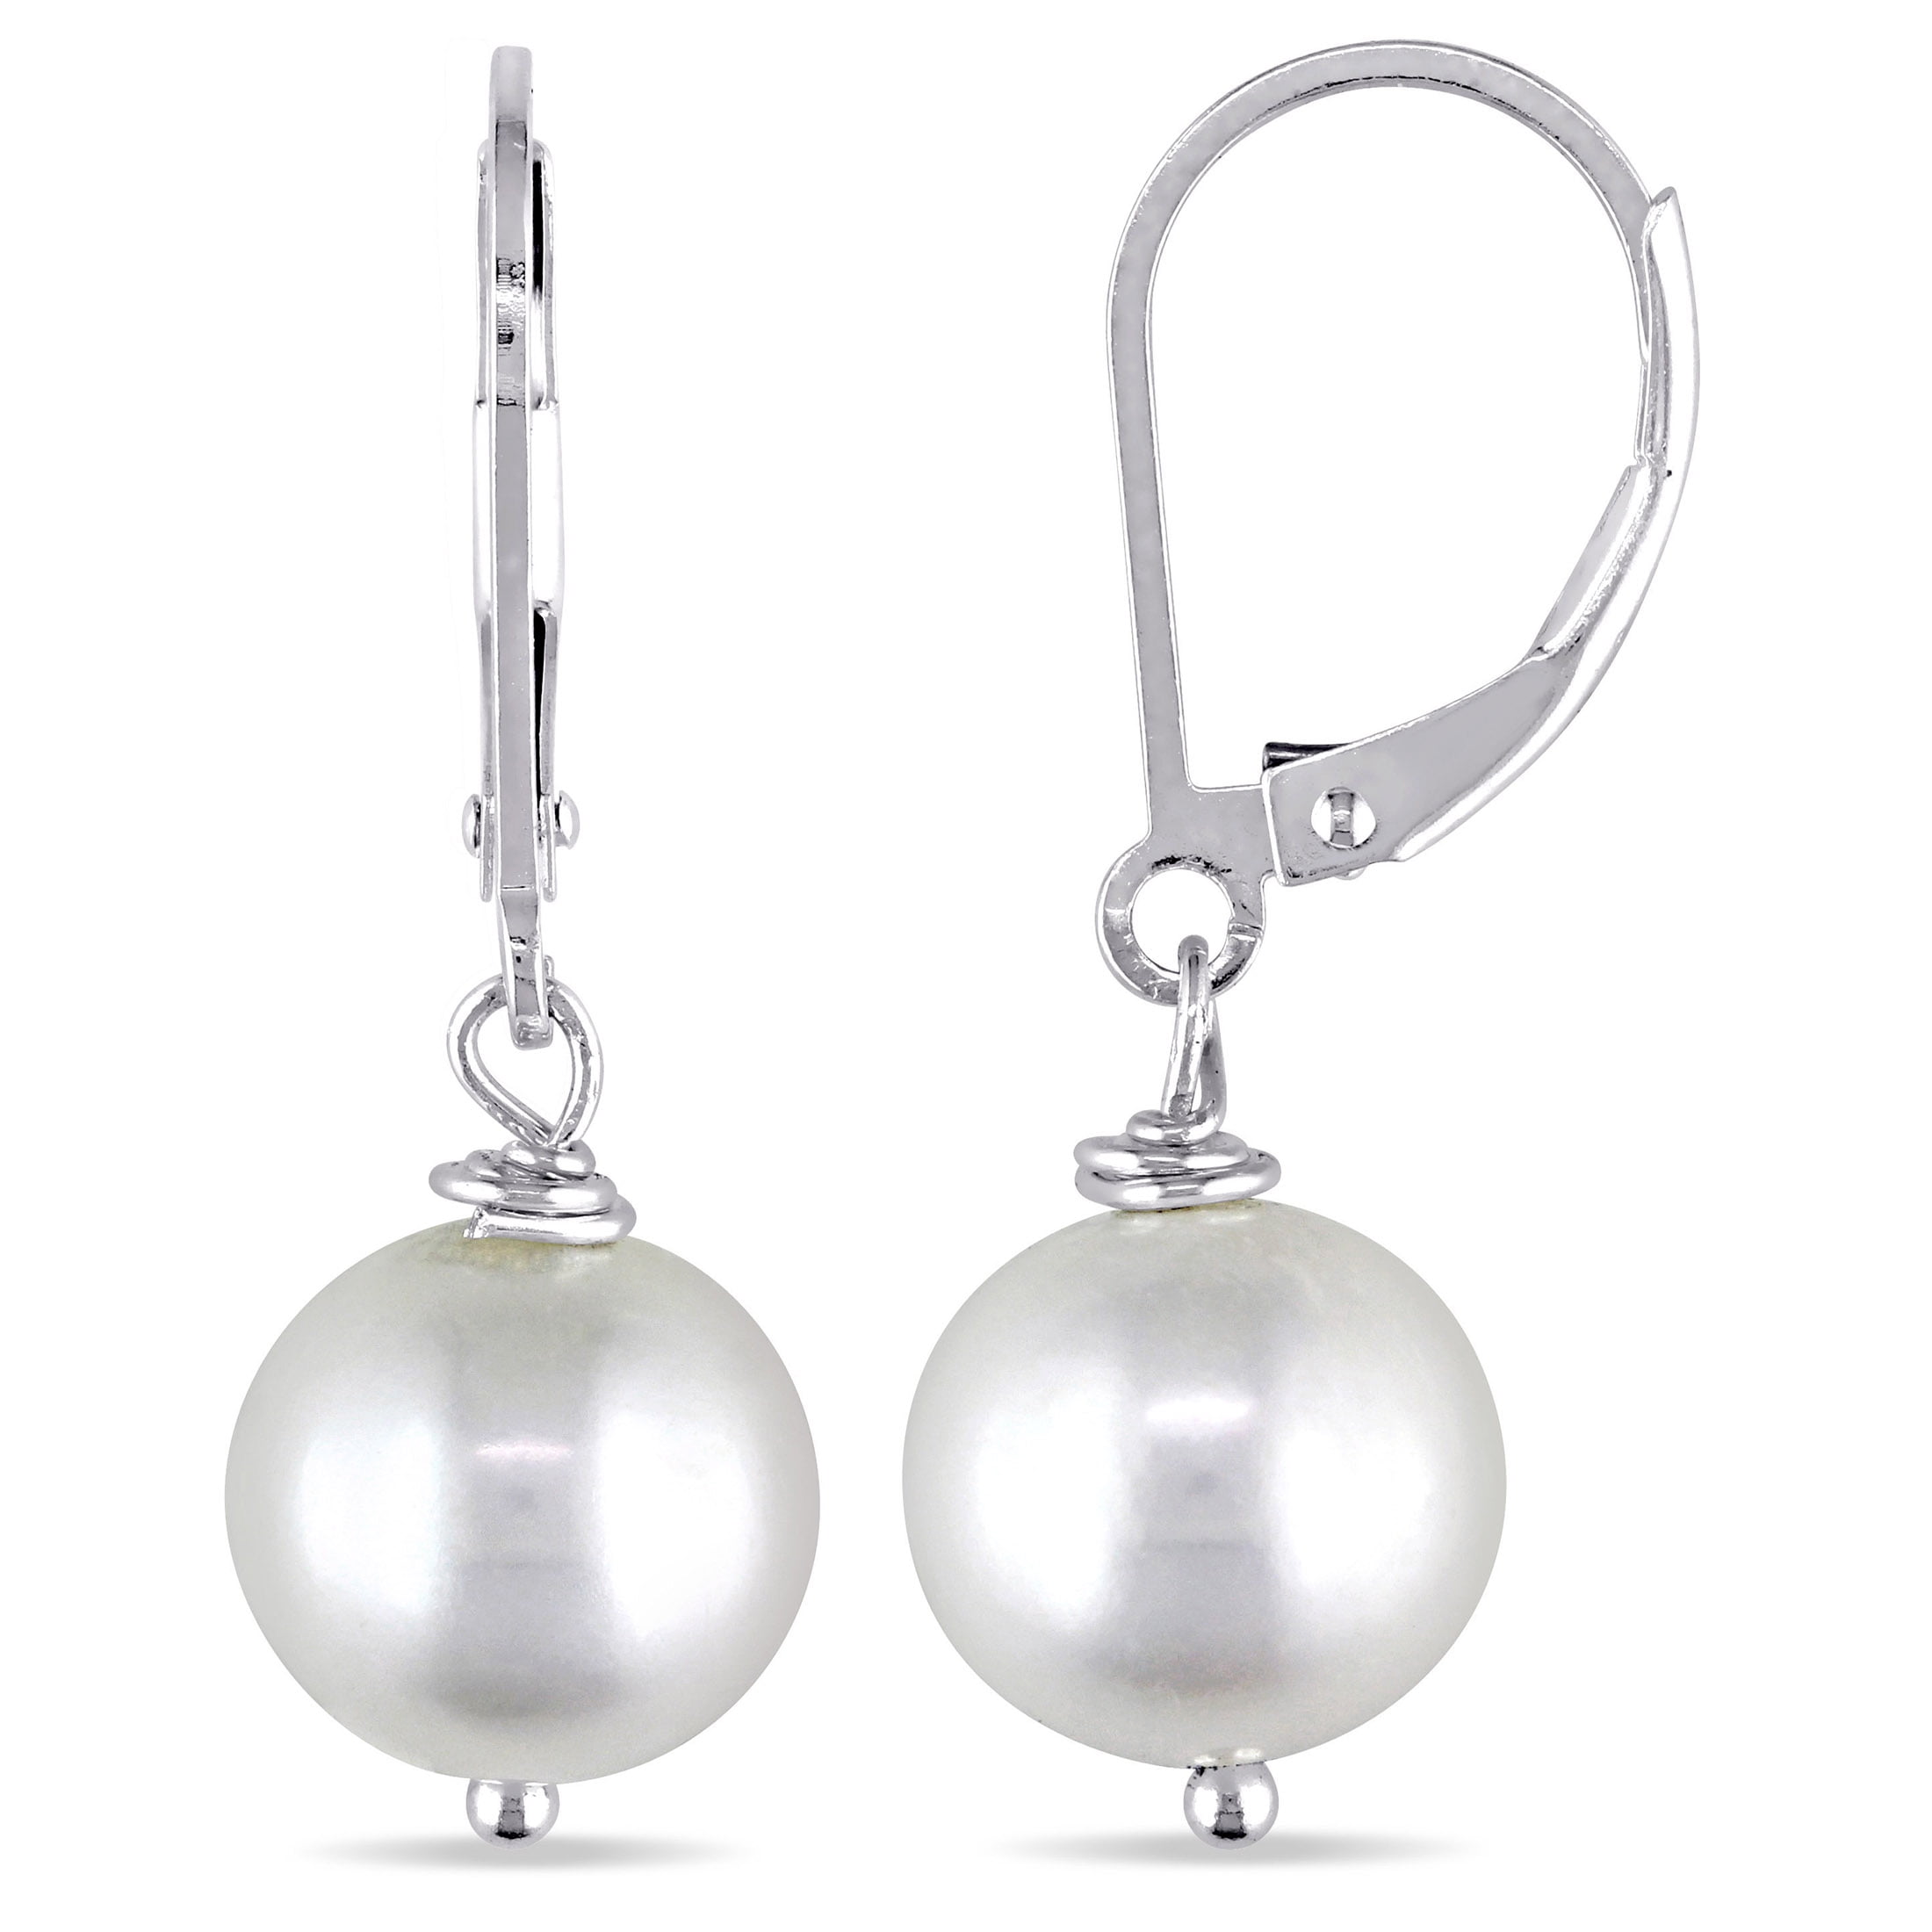 Der Womens Western Fashion 925 Silver U-Shaped Pearl Stud Earrings S925 Silver Earrings After Hanging Pearl Moon Boat Earrings Tassel Long Earrings